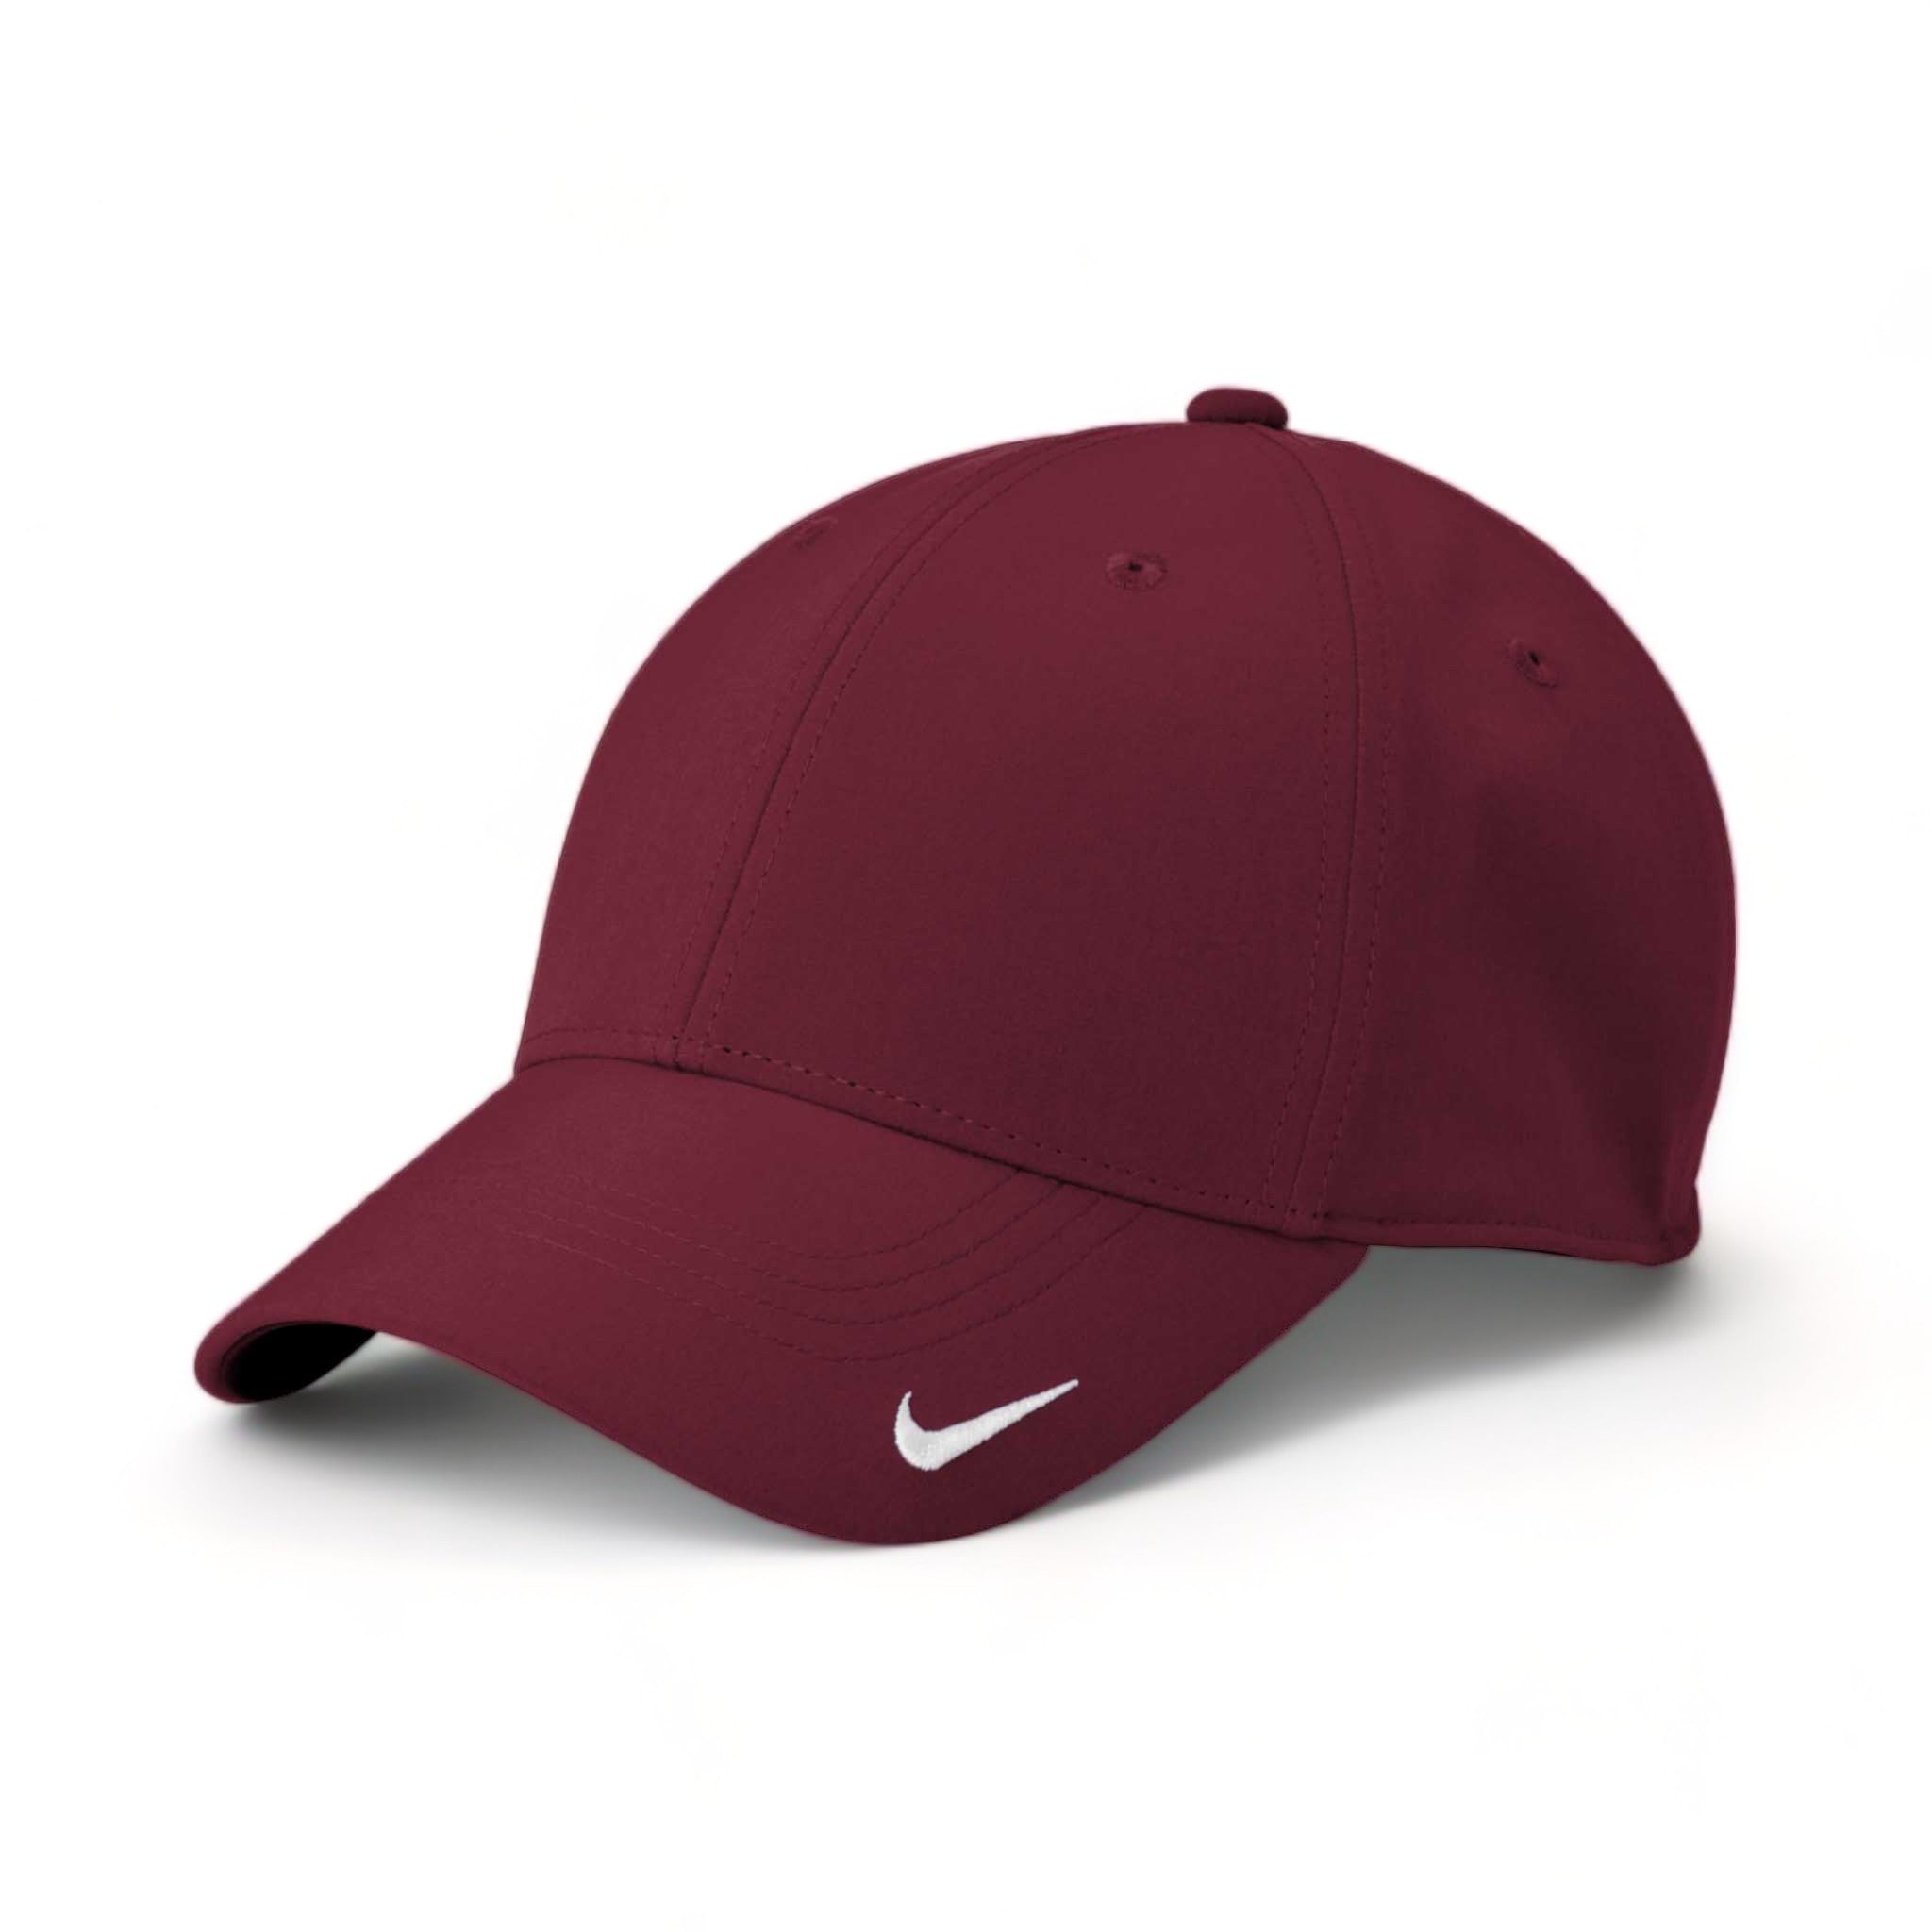 Side view of Nike NKFB6447 custom hat in deep maroon